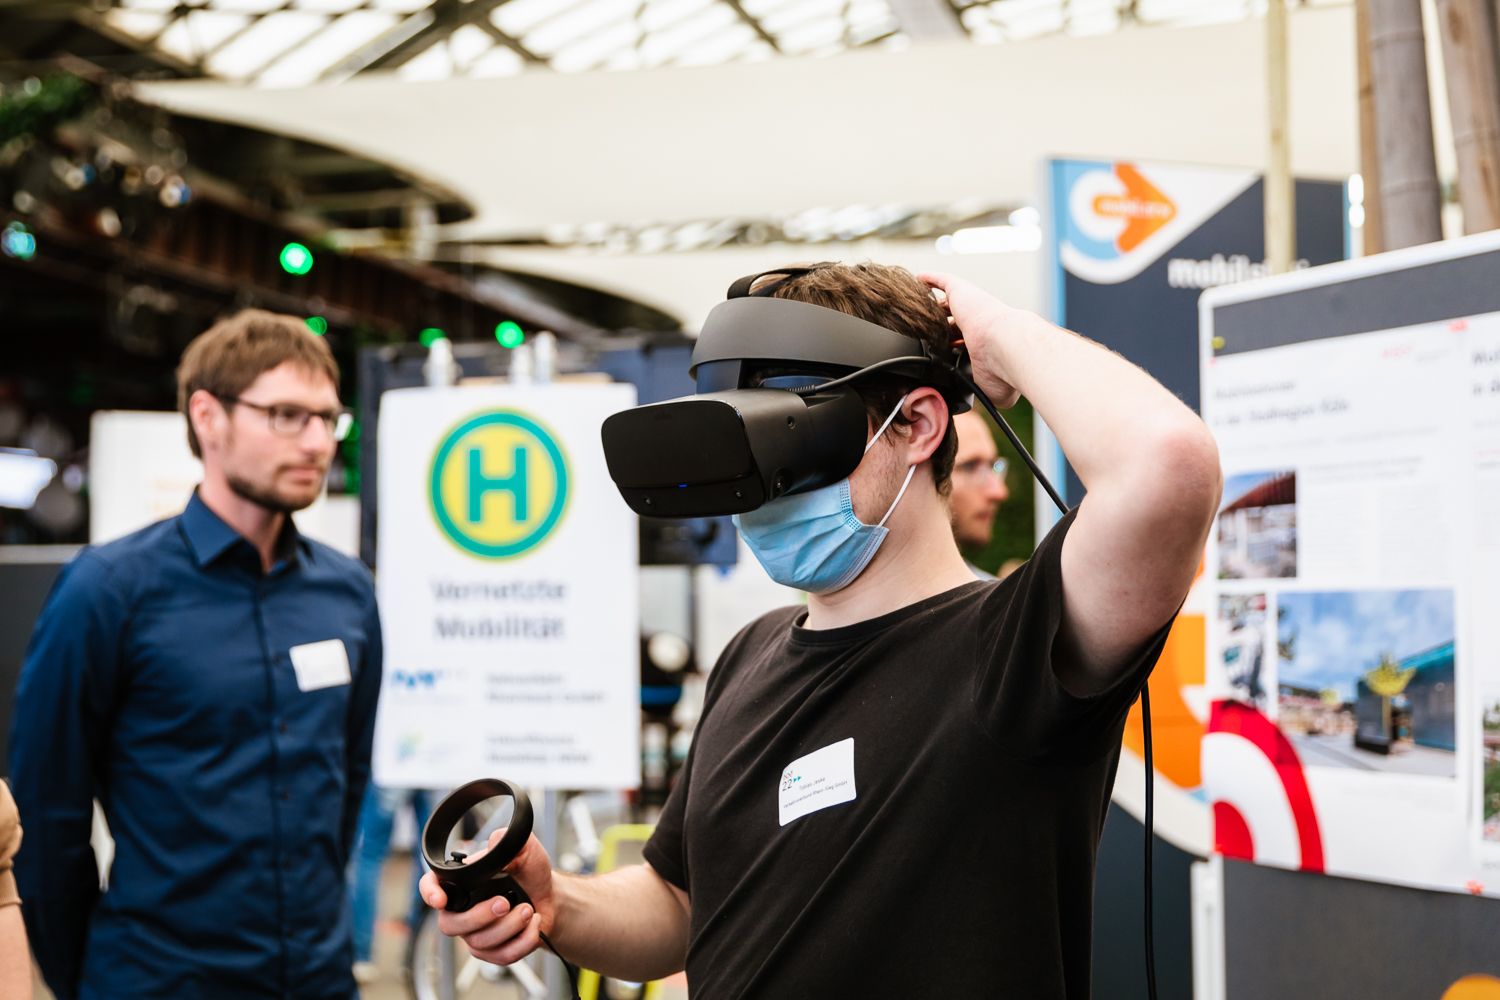 Wir sehen einen Besucher der Mobilitätsakademie, der mit einer Virtual Reality-Brille eine Mobilstation digital erkundet.